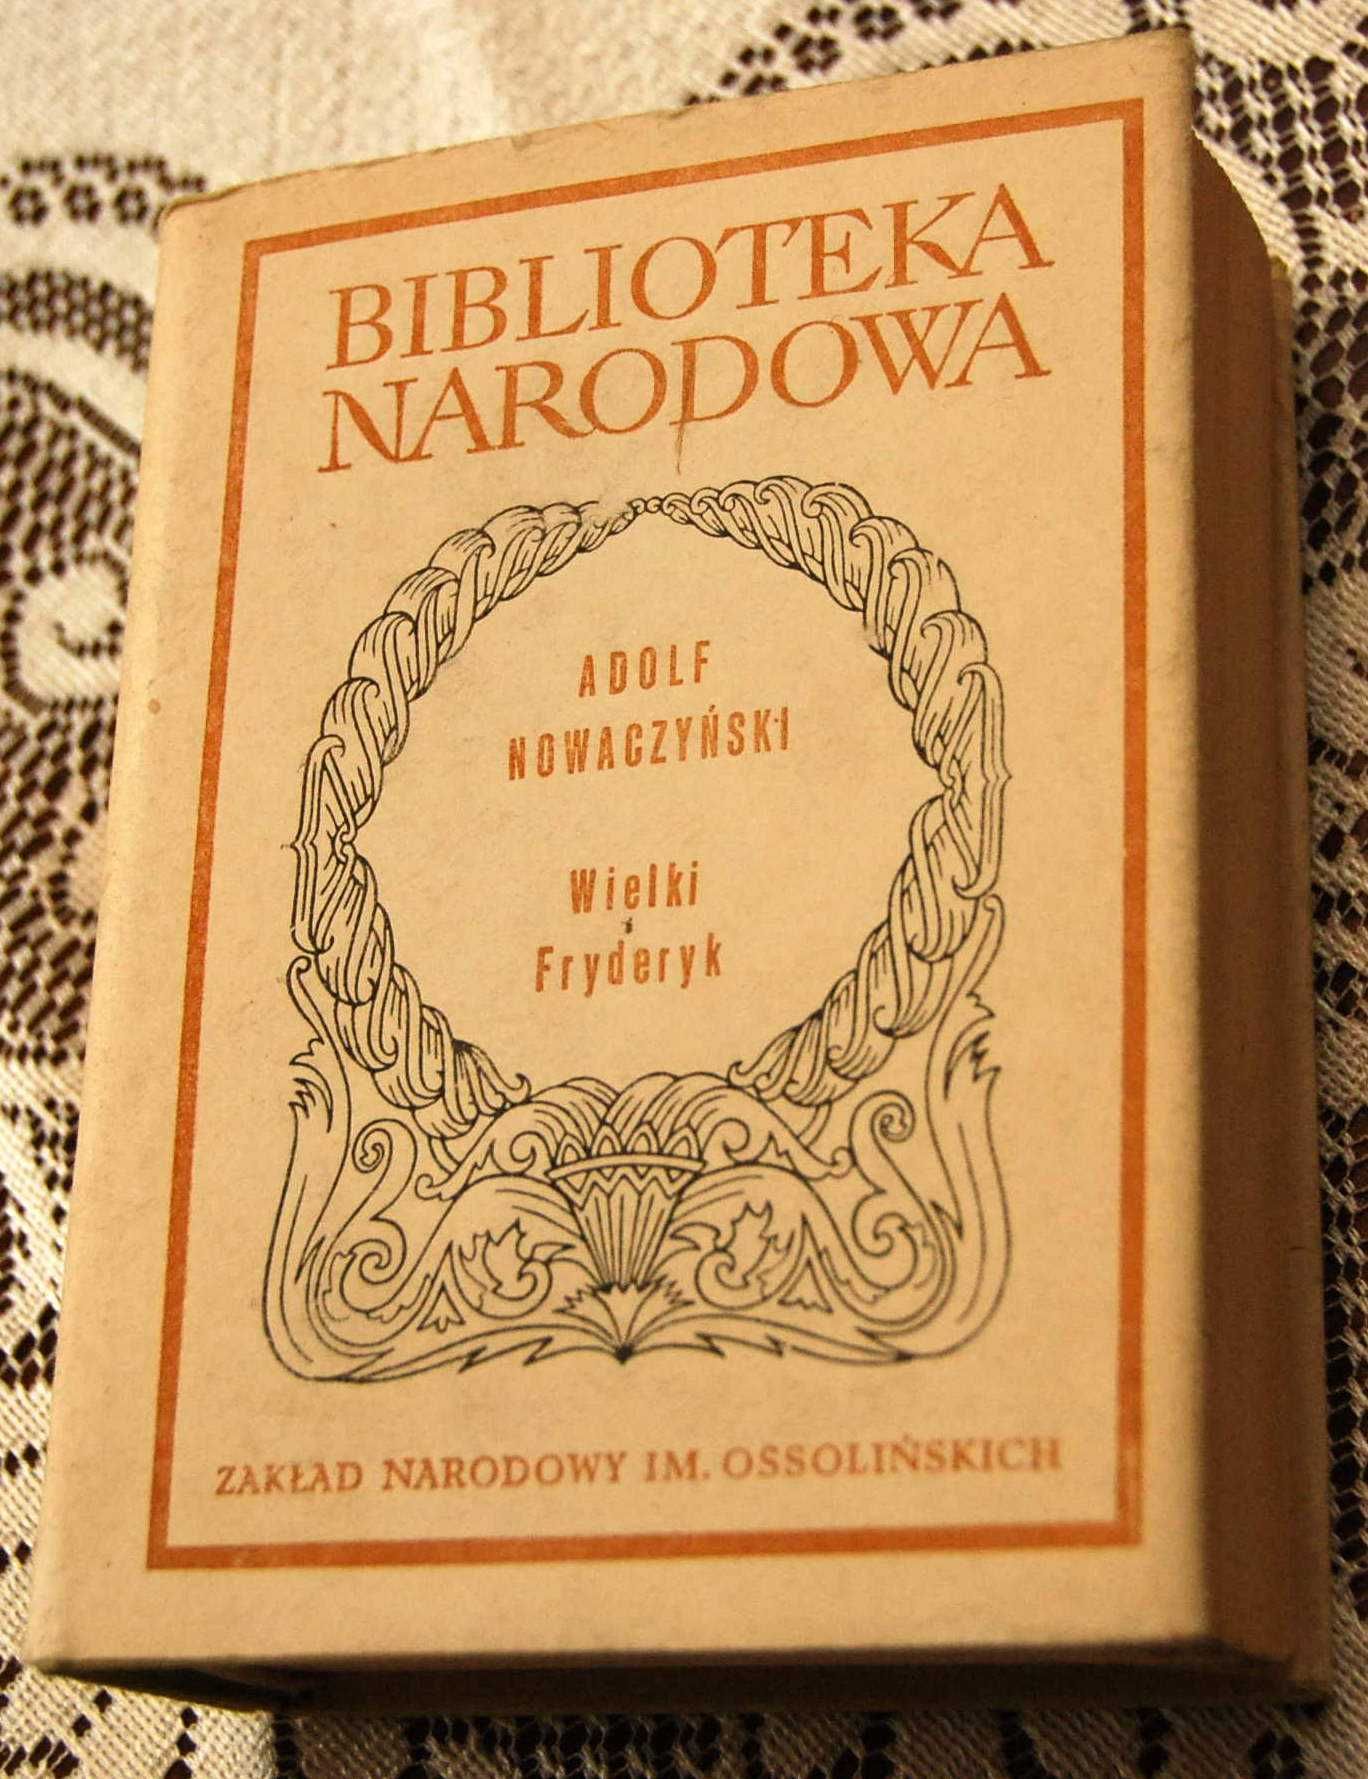 Wielki Fryderyk Powieść dramatyczna Nowaczyński Biblioteka Narod. 1982